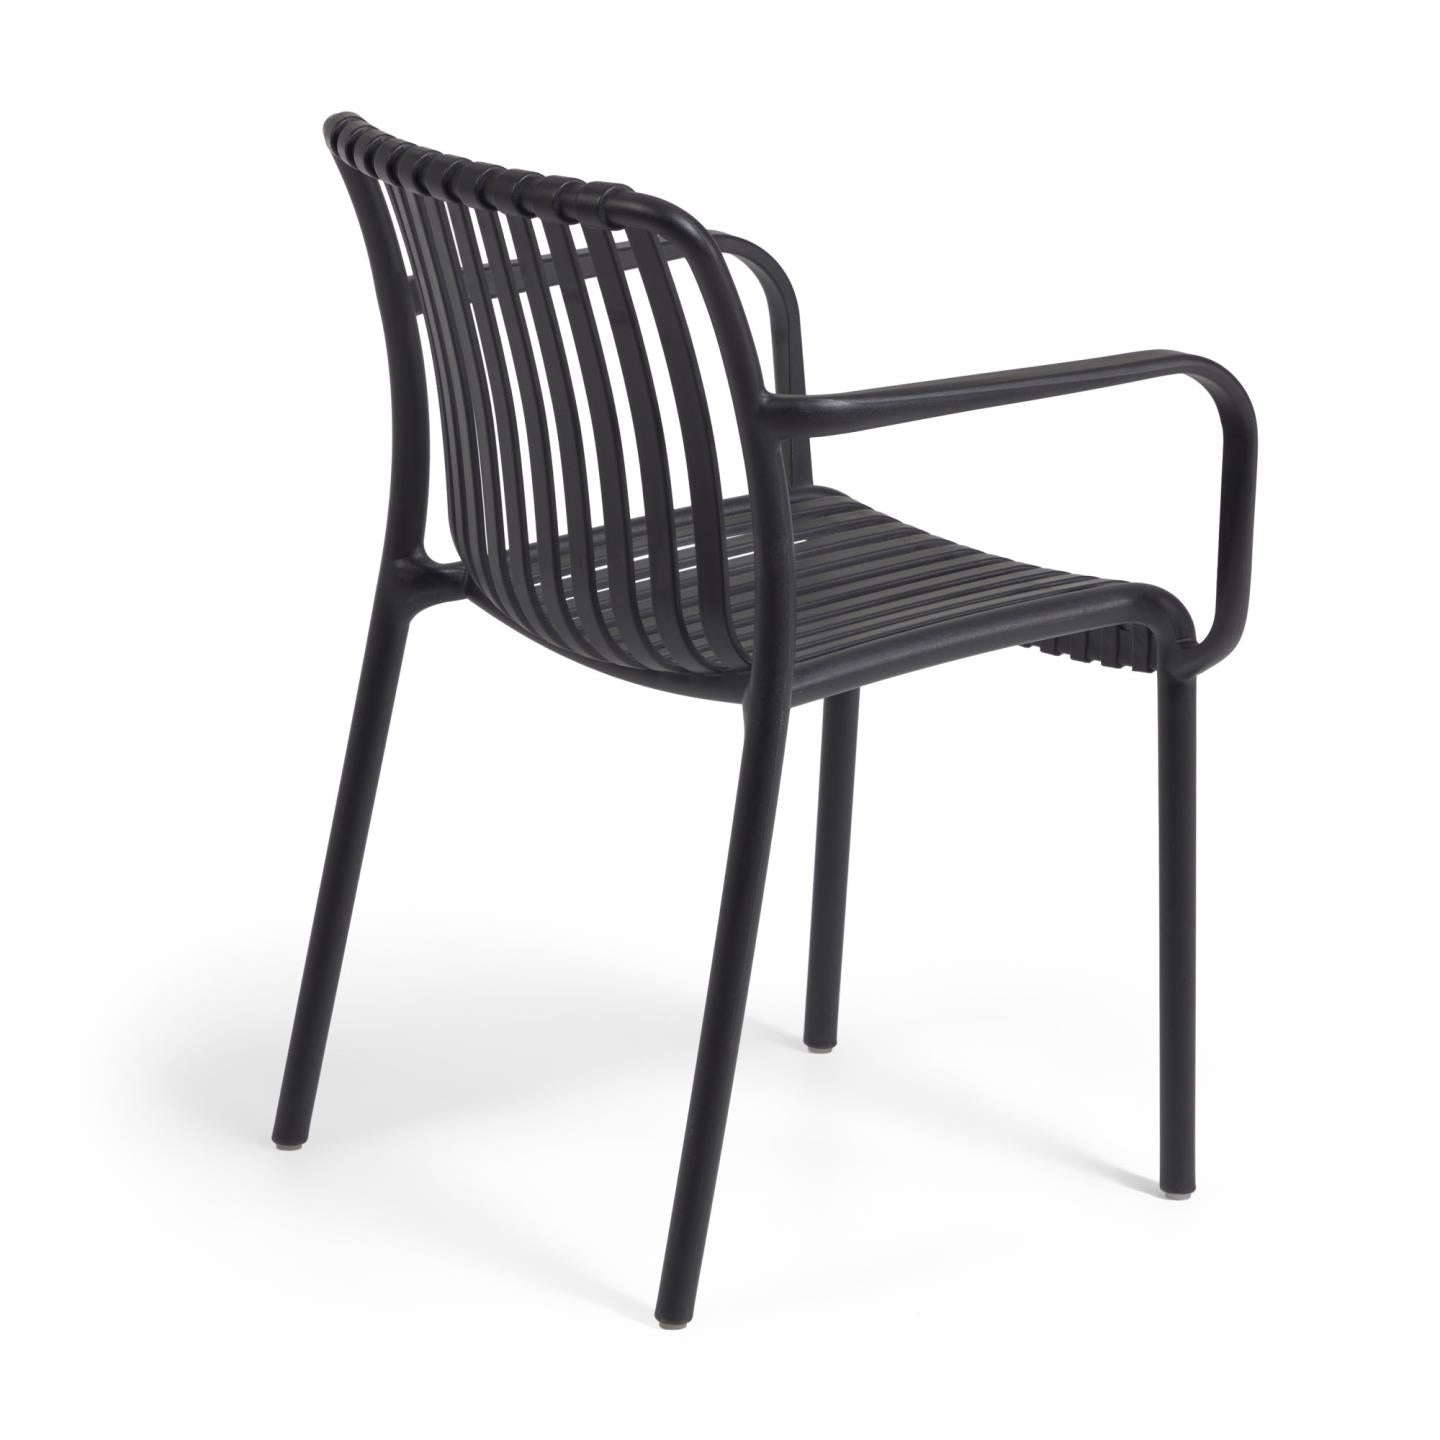 Isabellini egymásba rakható kültéri szék fekete színben